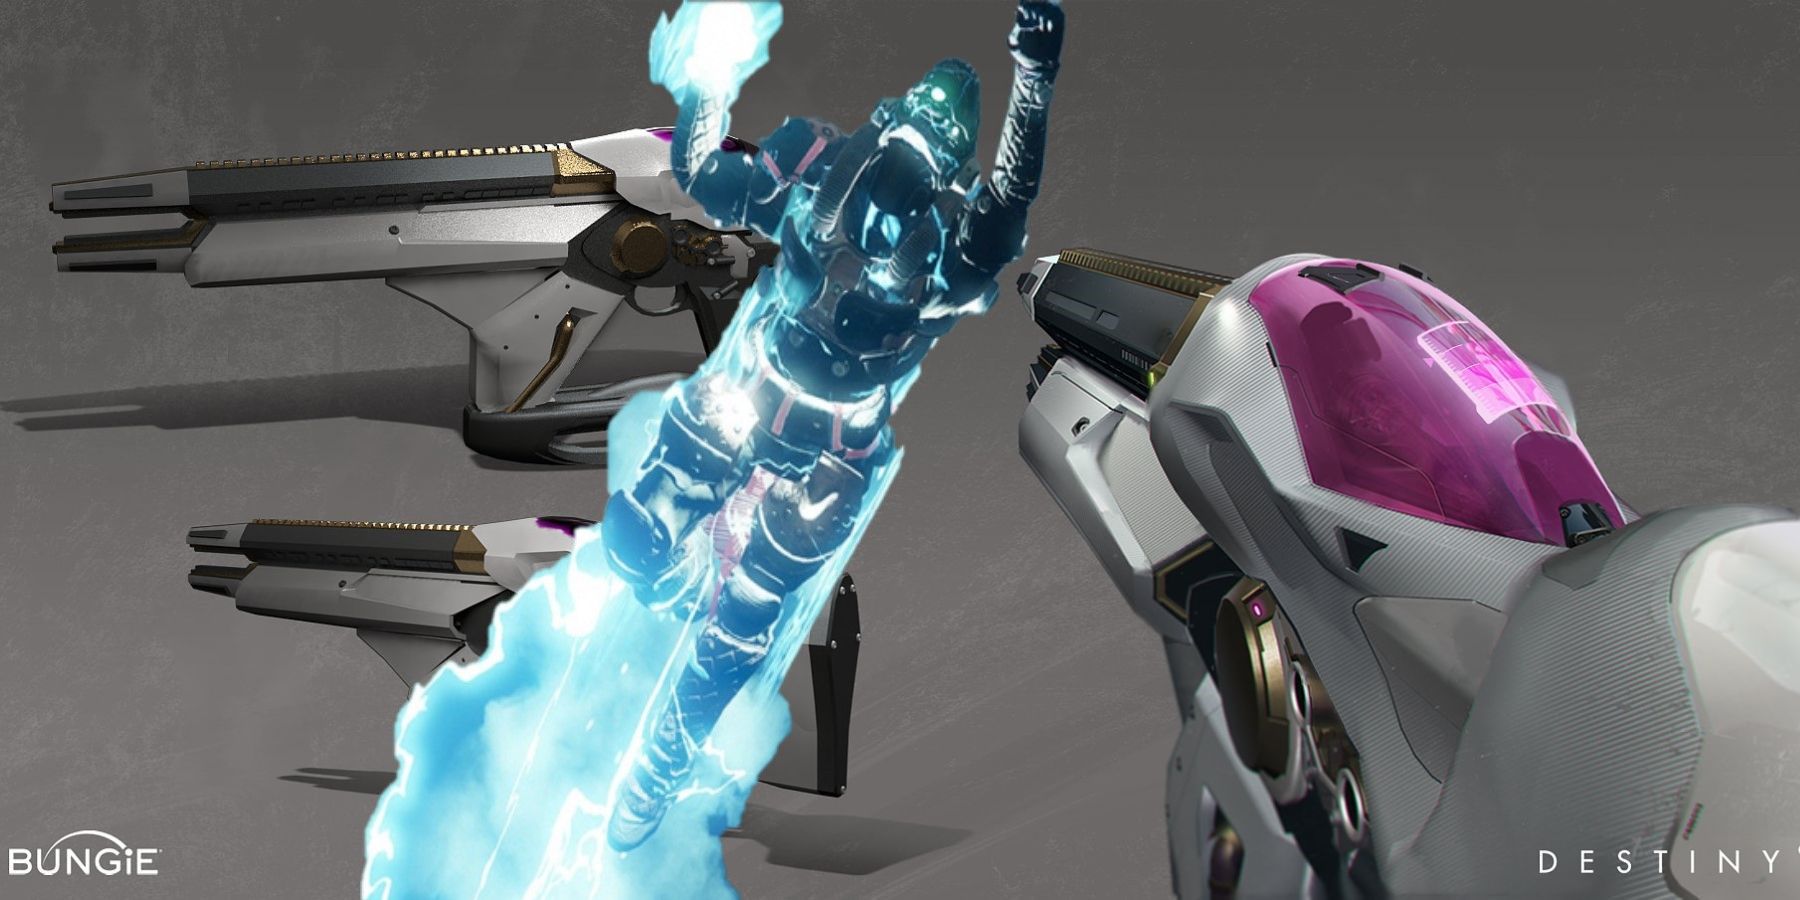 Destiny 2 -pelaajat voivat saada Infinite Supers -peliä PVP:ssä uudella Telesto Glitchin avulla